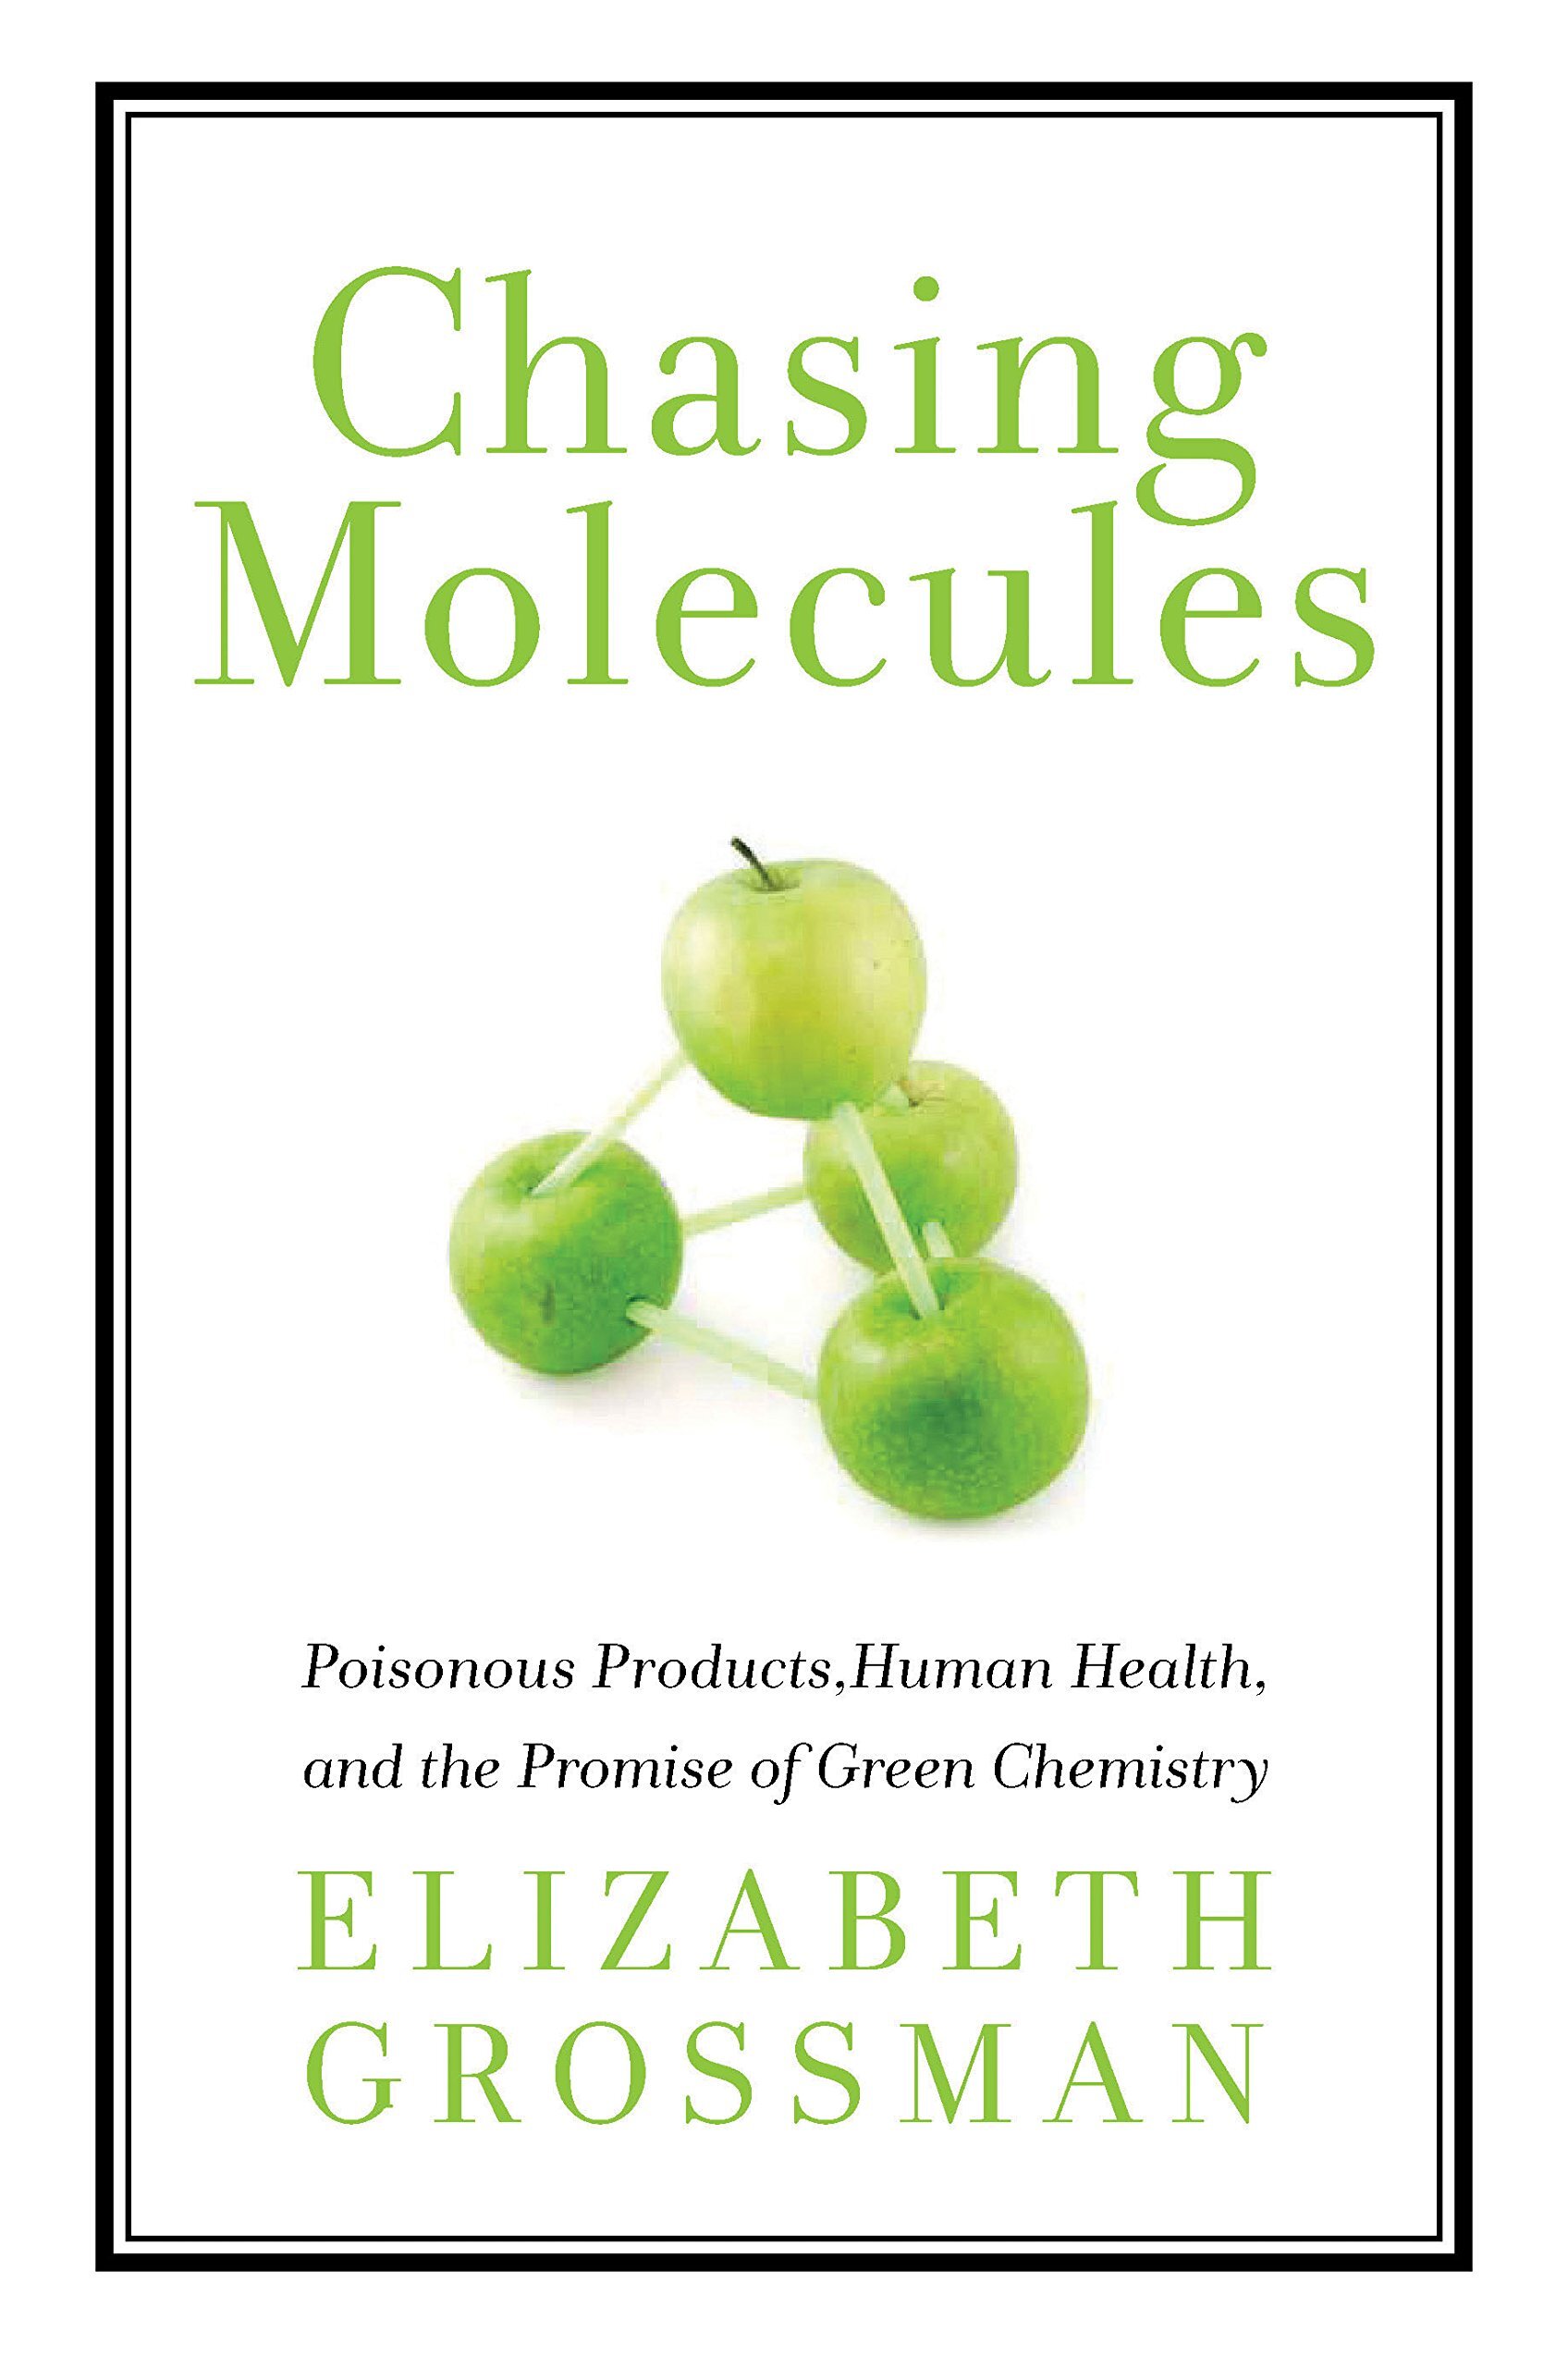 《追逐分子:有毒产品、人类健康和绿色化学的承诺》，作者伊丽莎白·格罗斯曼